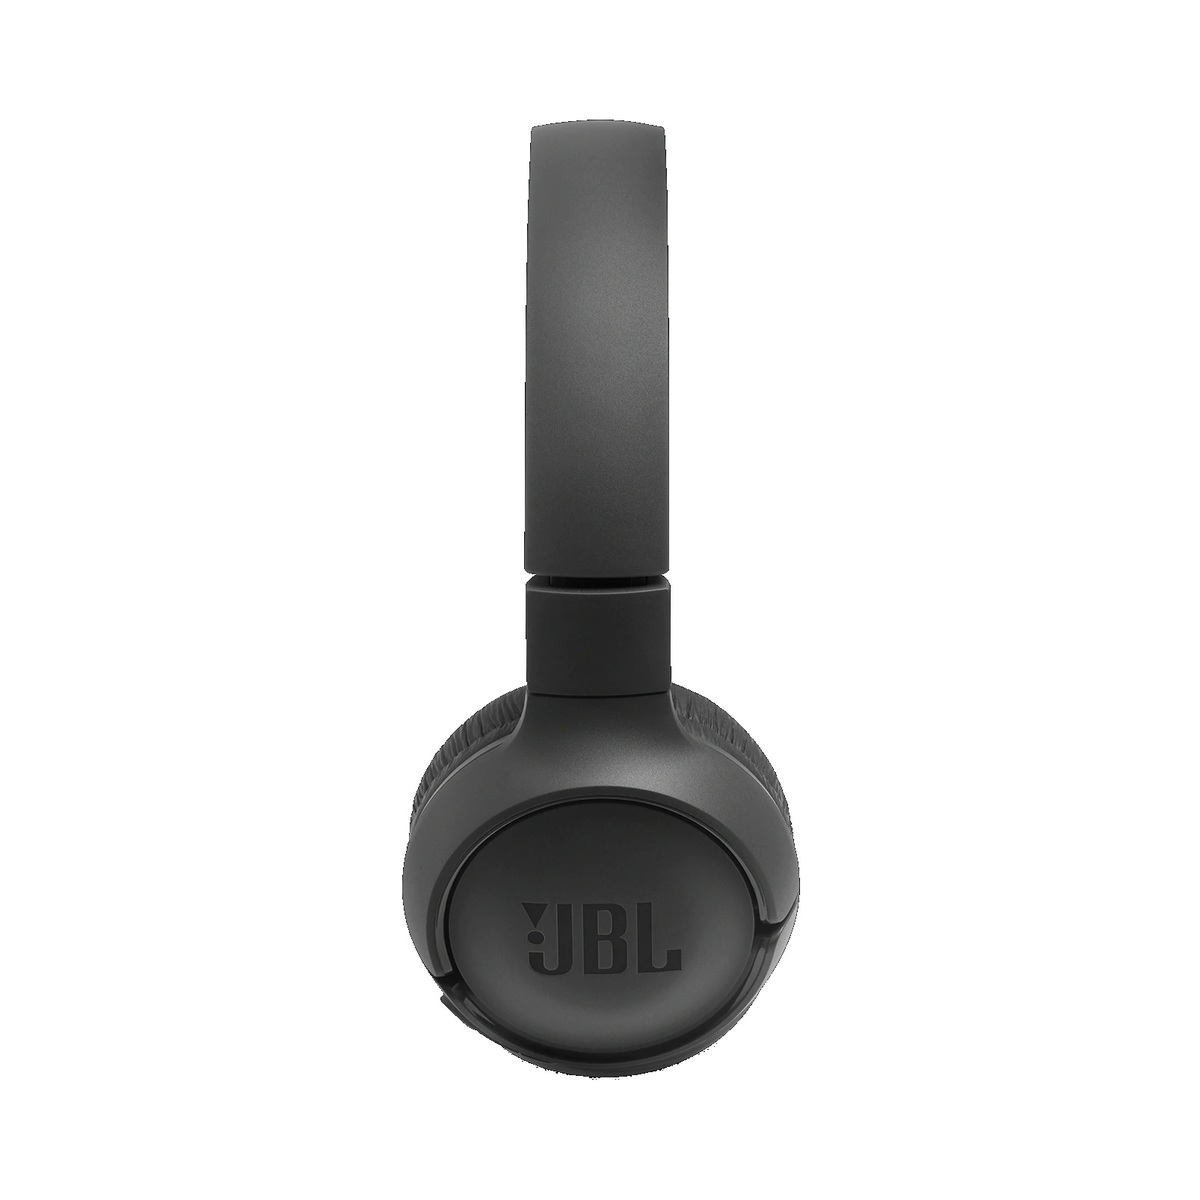 JBL Wireless Headphone JBLT500BT Black